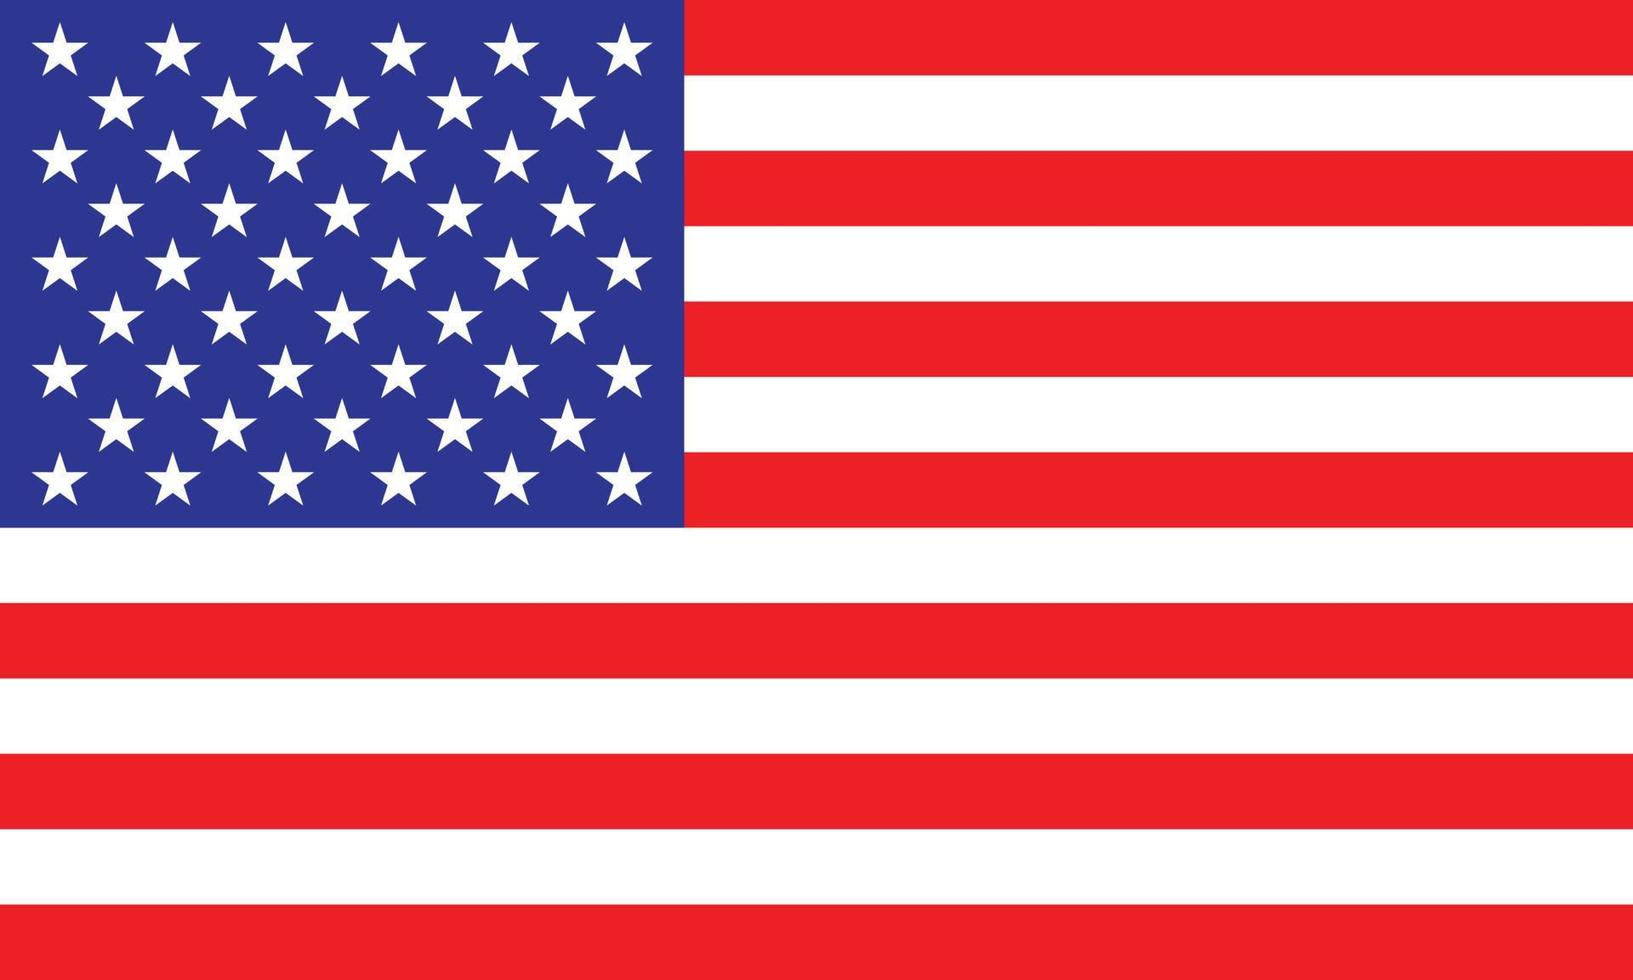 eps10 icono de bandera de América vector azul y rojo con estrellas blancas. símbolo de la bandera nacional estadounidense en un estilo moderno y plano simple para el diseño de su sitio web, logotipo, pictograma, interfaz de usuario y aplicación móvil